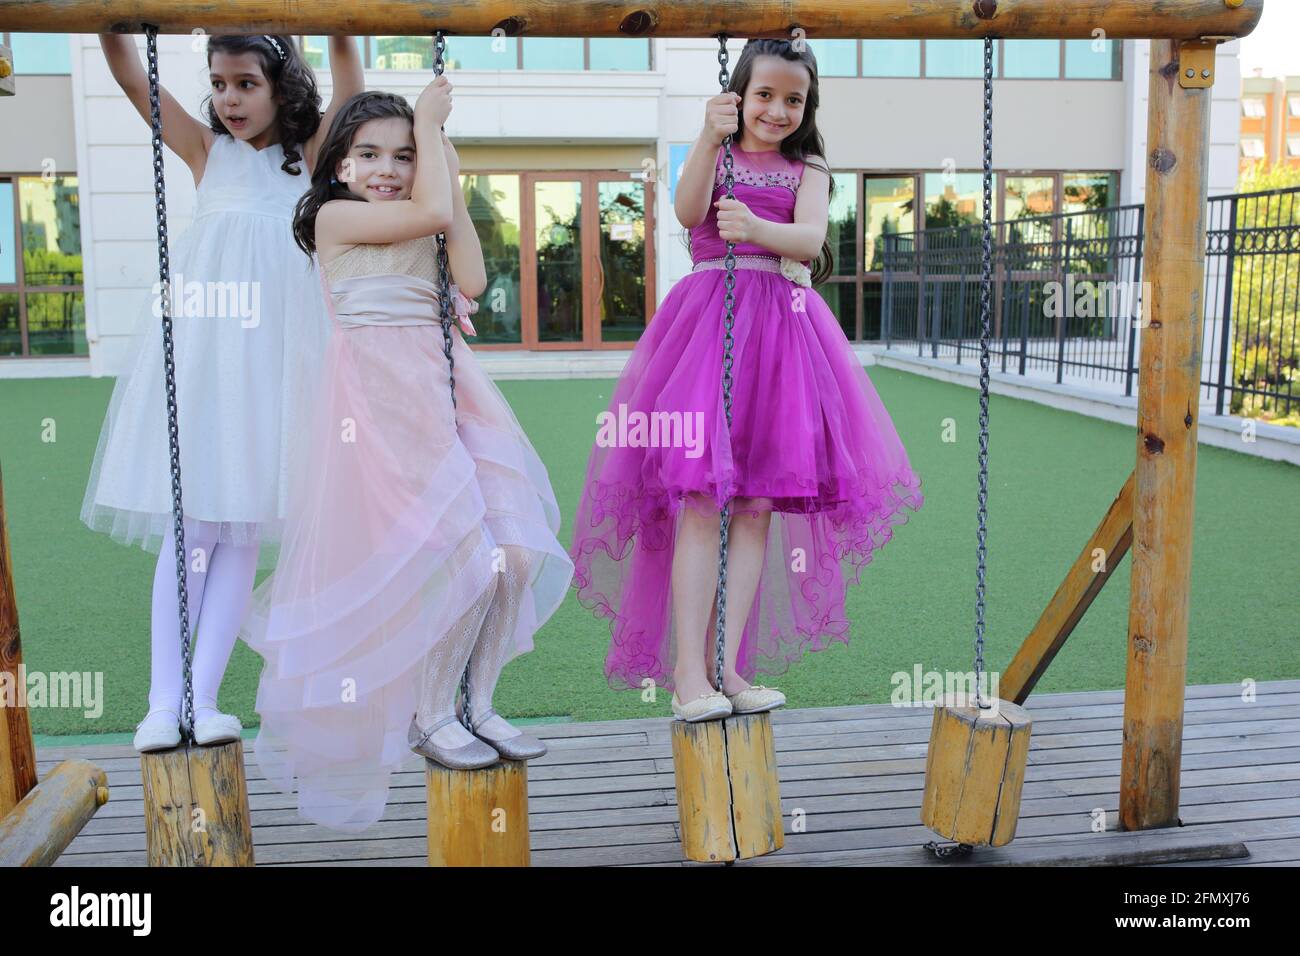 Kinder (drei Mädchen) mit Ballkleid auf dem Spielplatz Stockfotografie -  Alamy